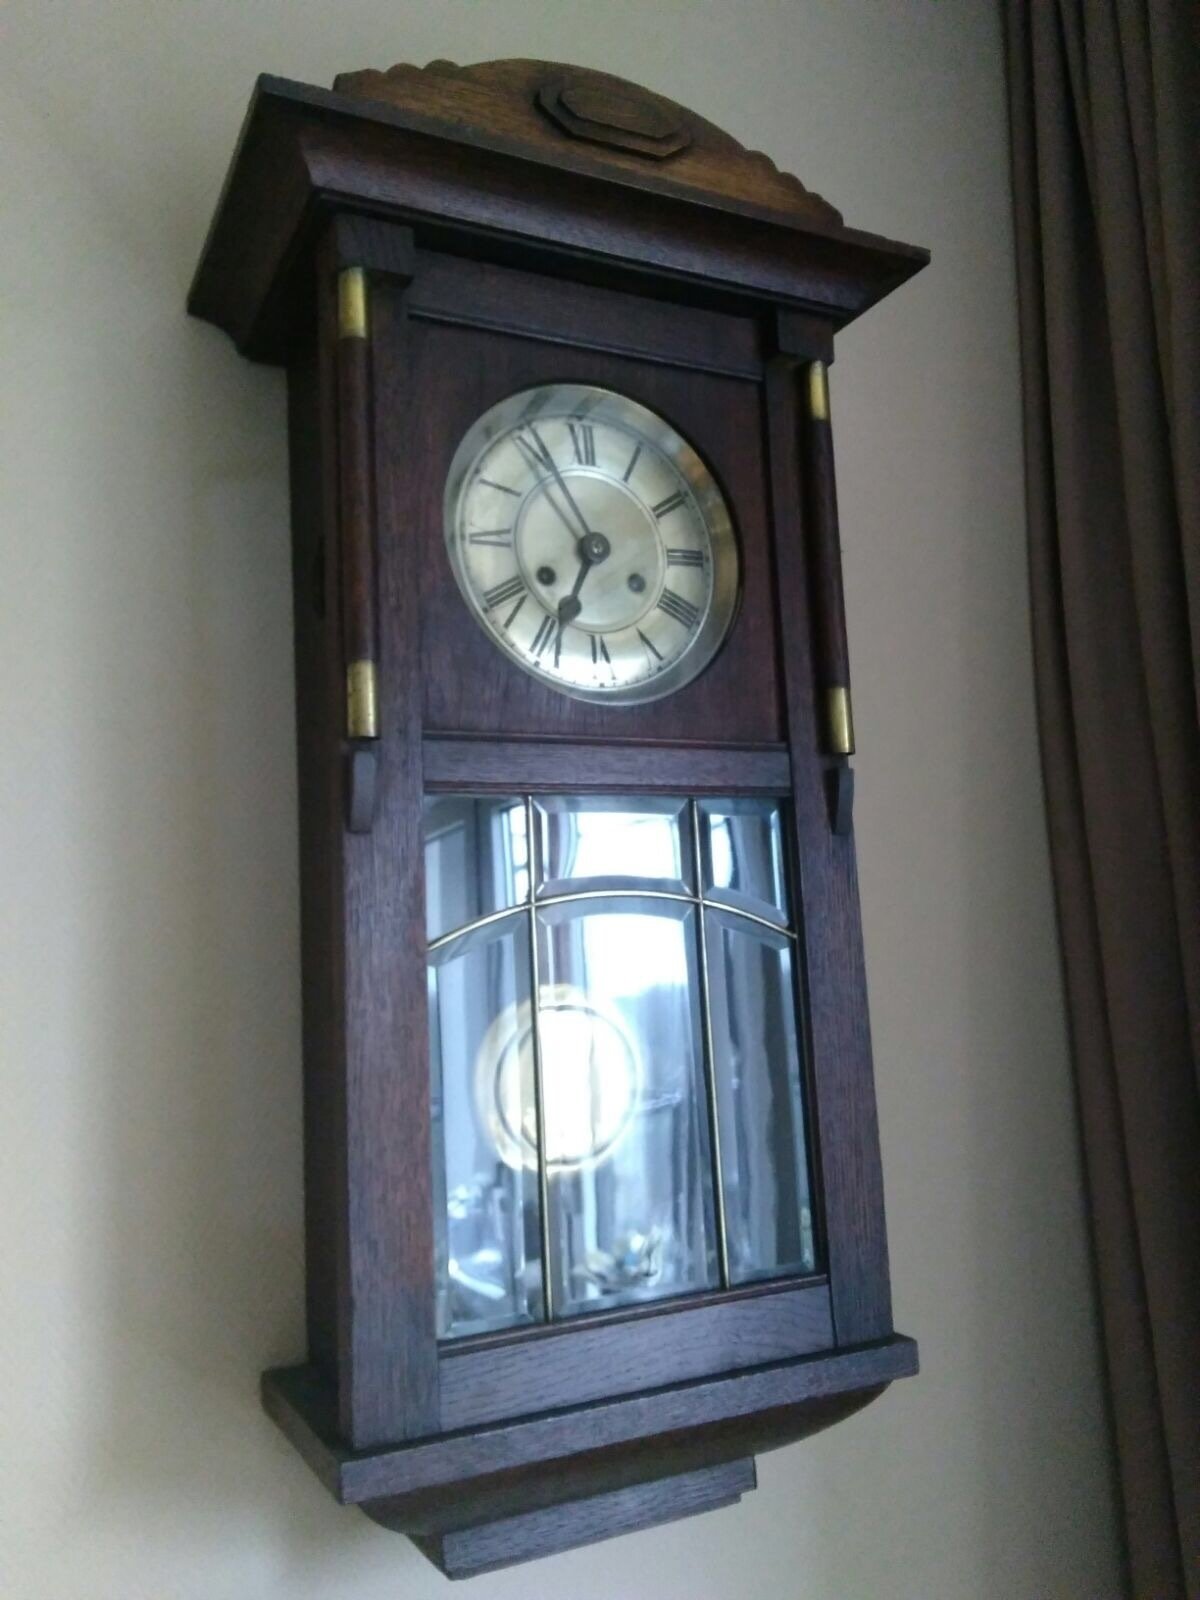 Klok erfstuk... waarde? - Vintage Horlogeforum - - het forum voor liefhebbers van horloges